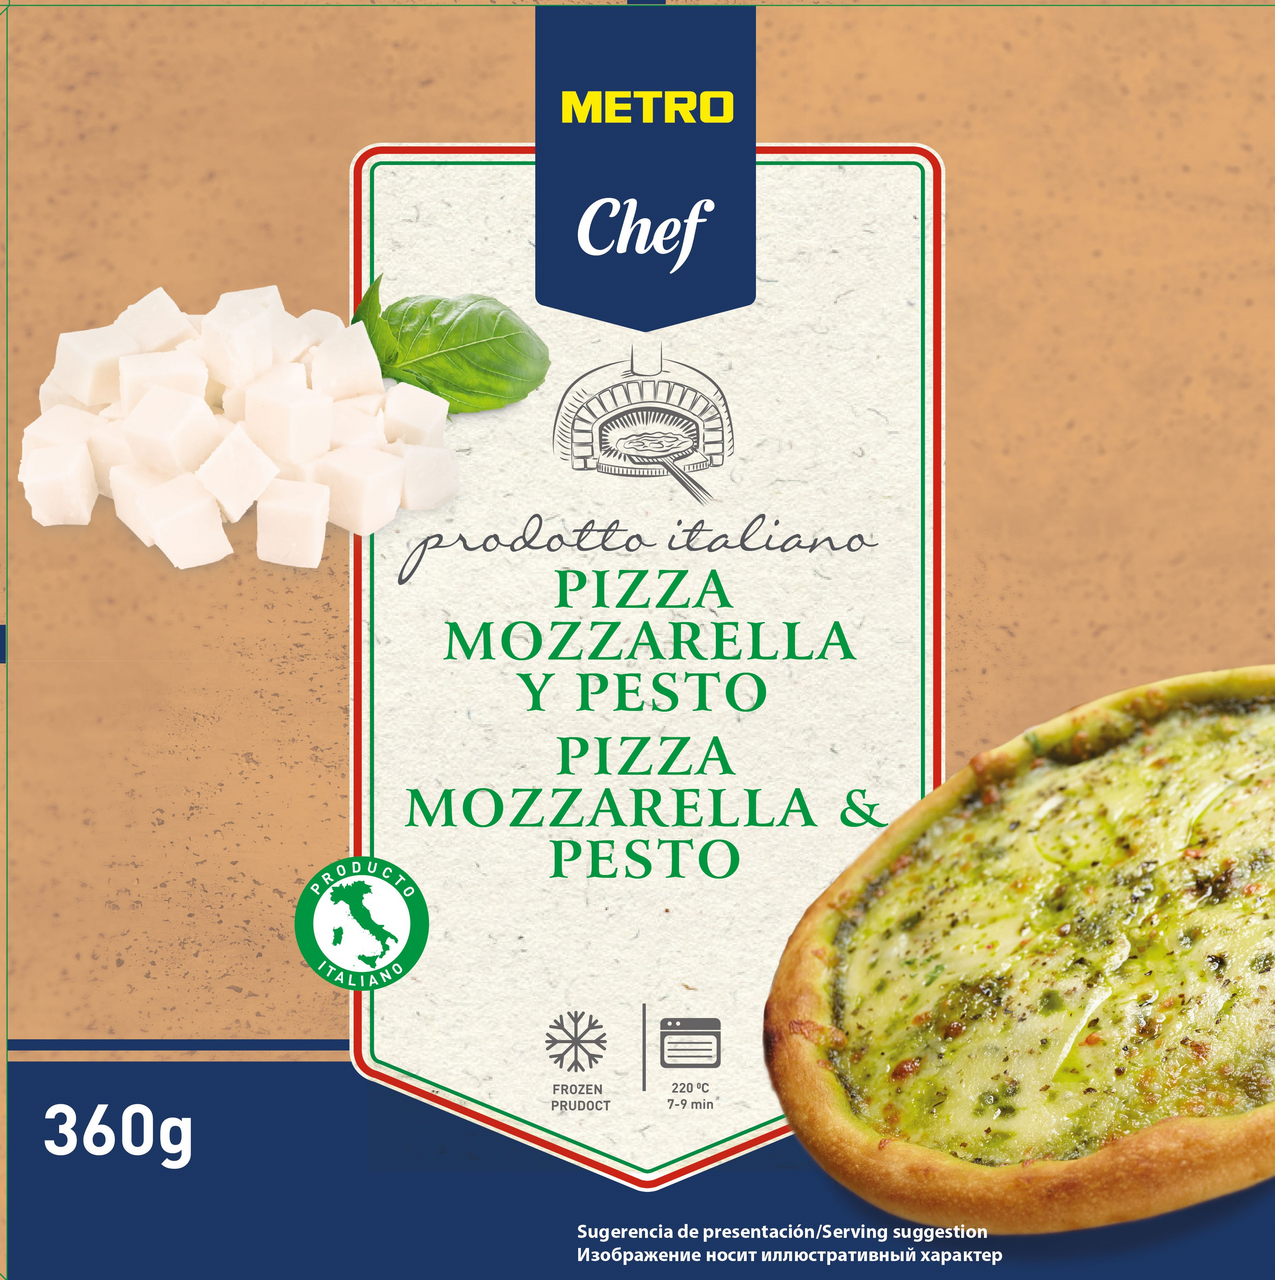 Пицца Metro Chef Моцарелла с соусом пестом 27 см